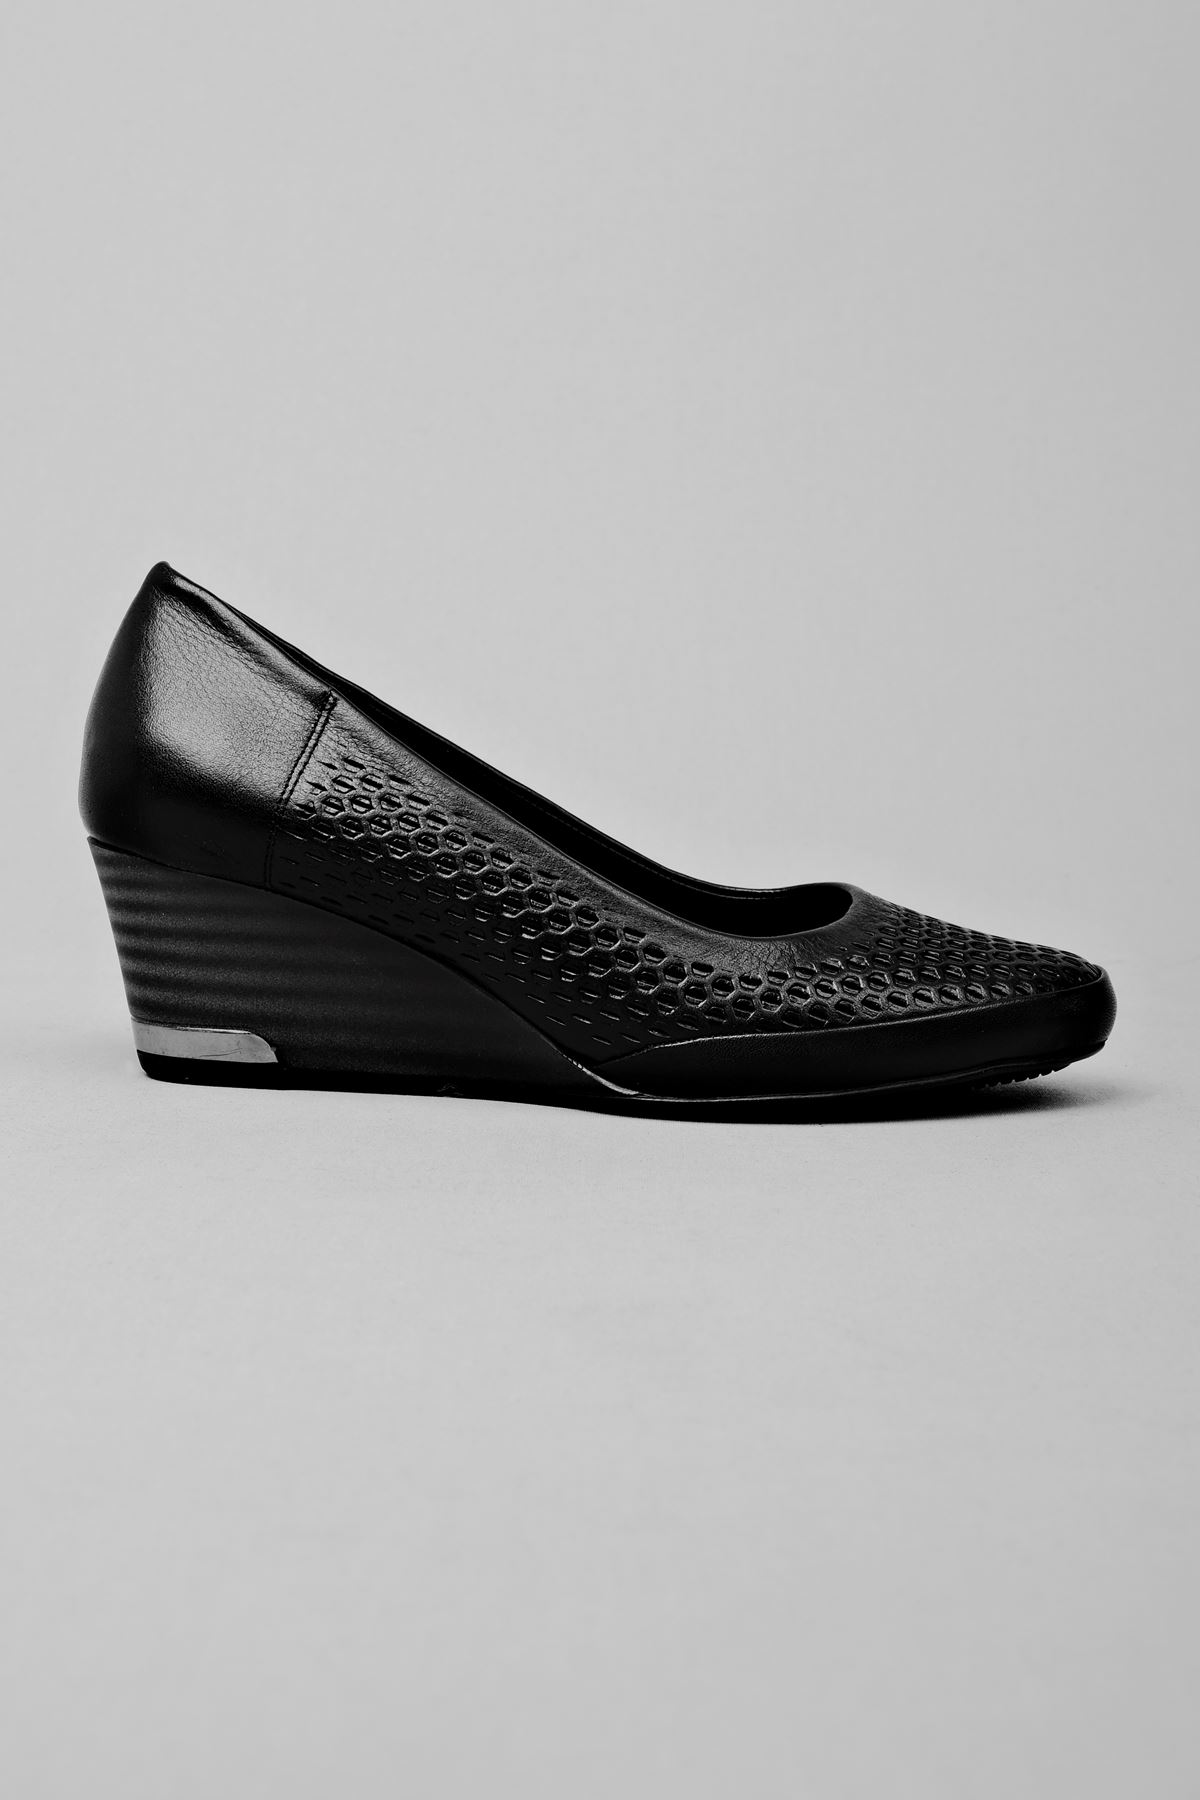 Sierta Kadın Hakiki Deri Ayakkabı Petek Desenli-siyah